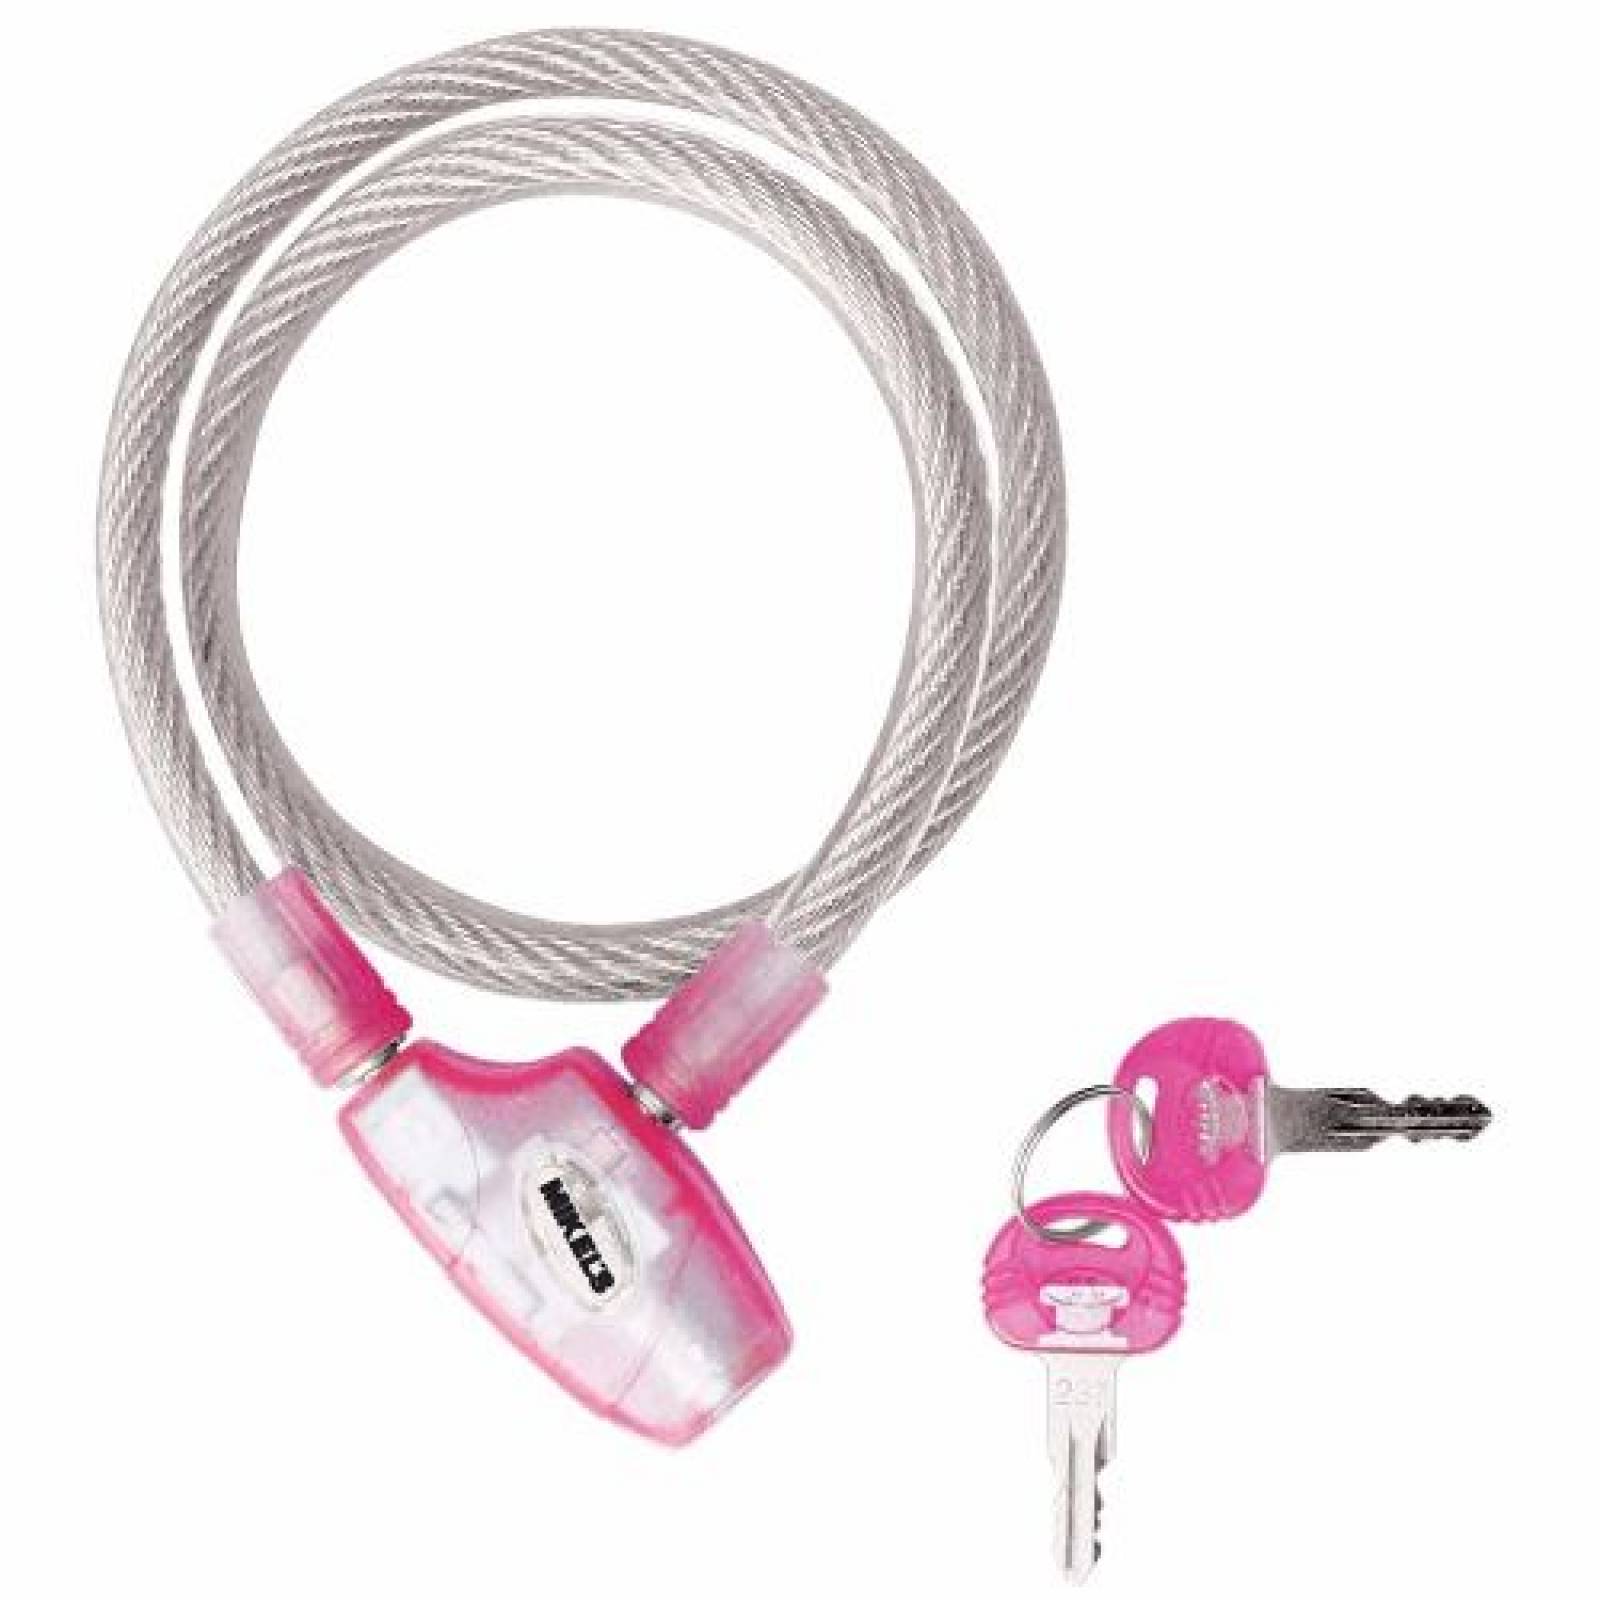 Cable Candado De Seguridad Mikels Color Rosa 65 Cm Plastica